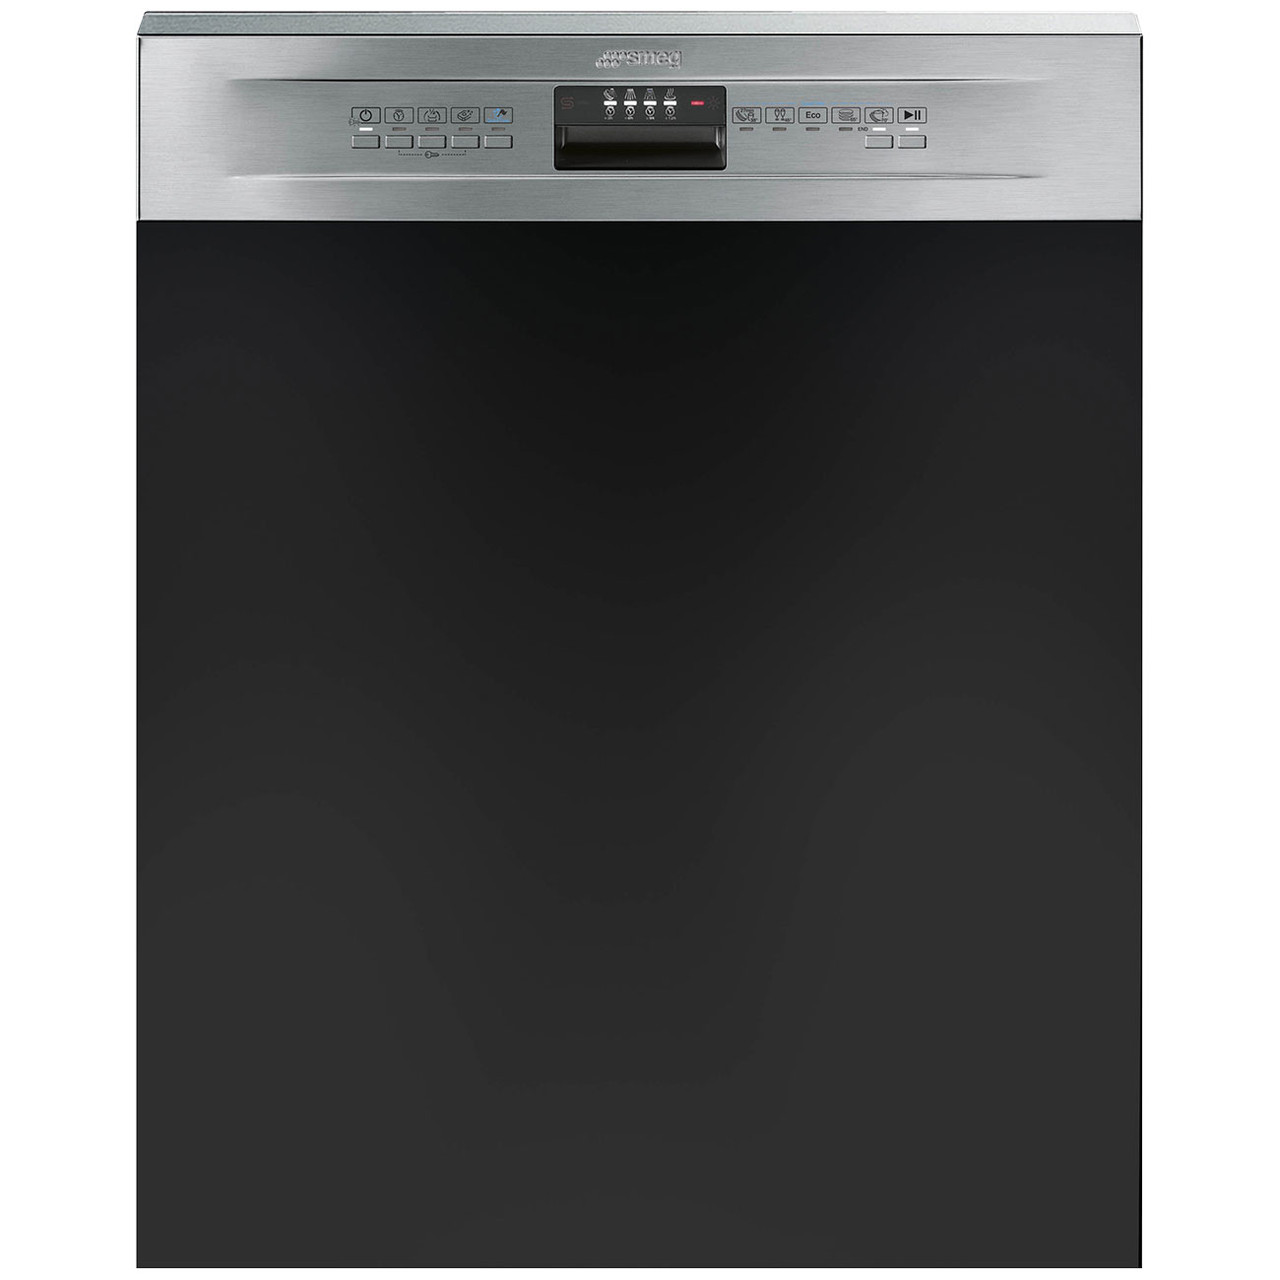 DWAI6314X2 - 60cm Semi-Integrated Dishwasher